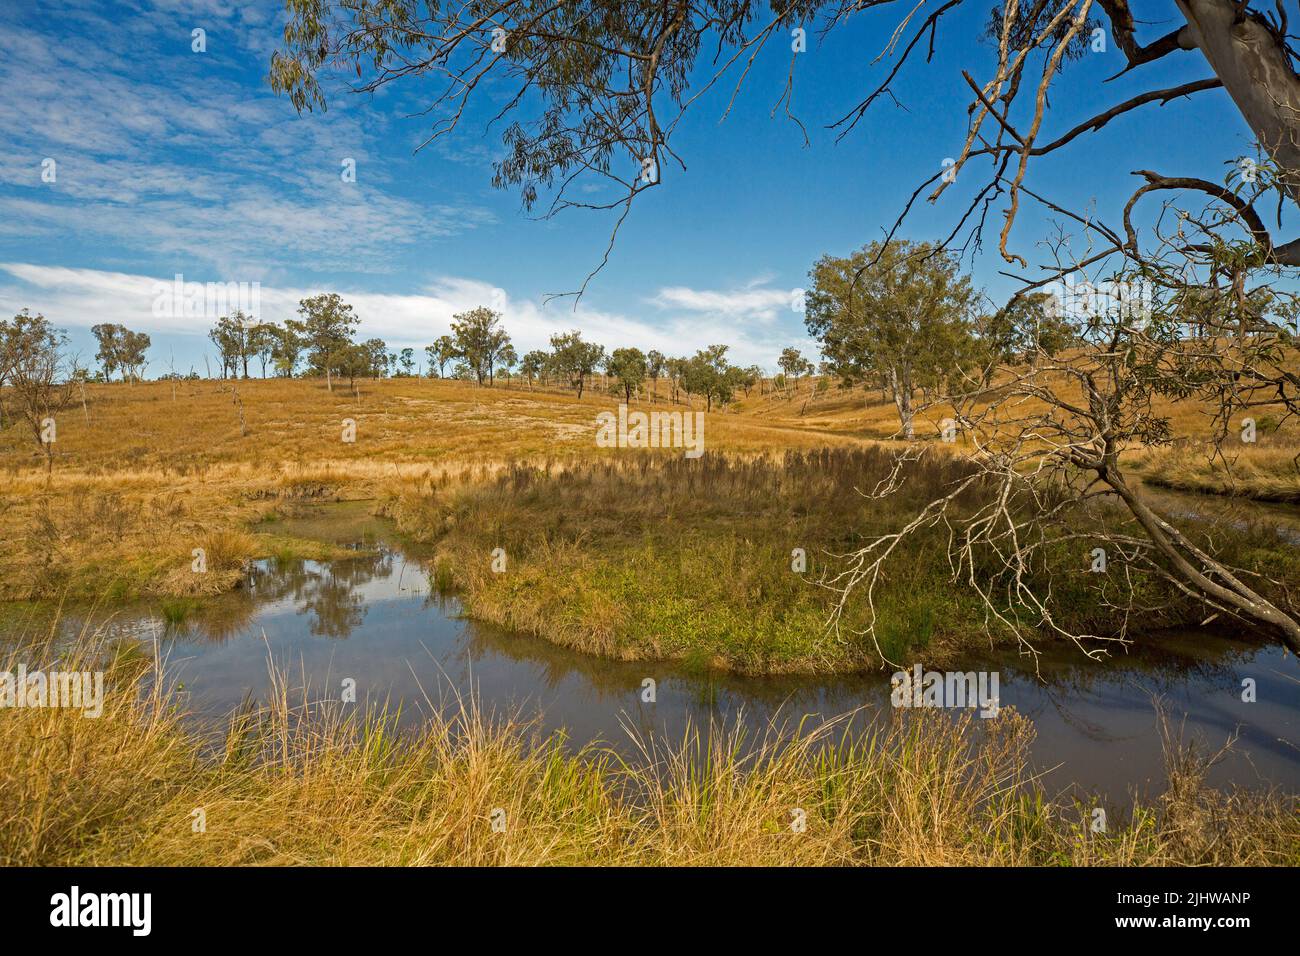 Australische ländliche Landschaft mit goldenen Gräsern und verstreuten Gummibäumen, die den Bach am Fuße der niedrigen Hügel unter blauem Himmel säumen Stockfoto